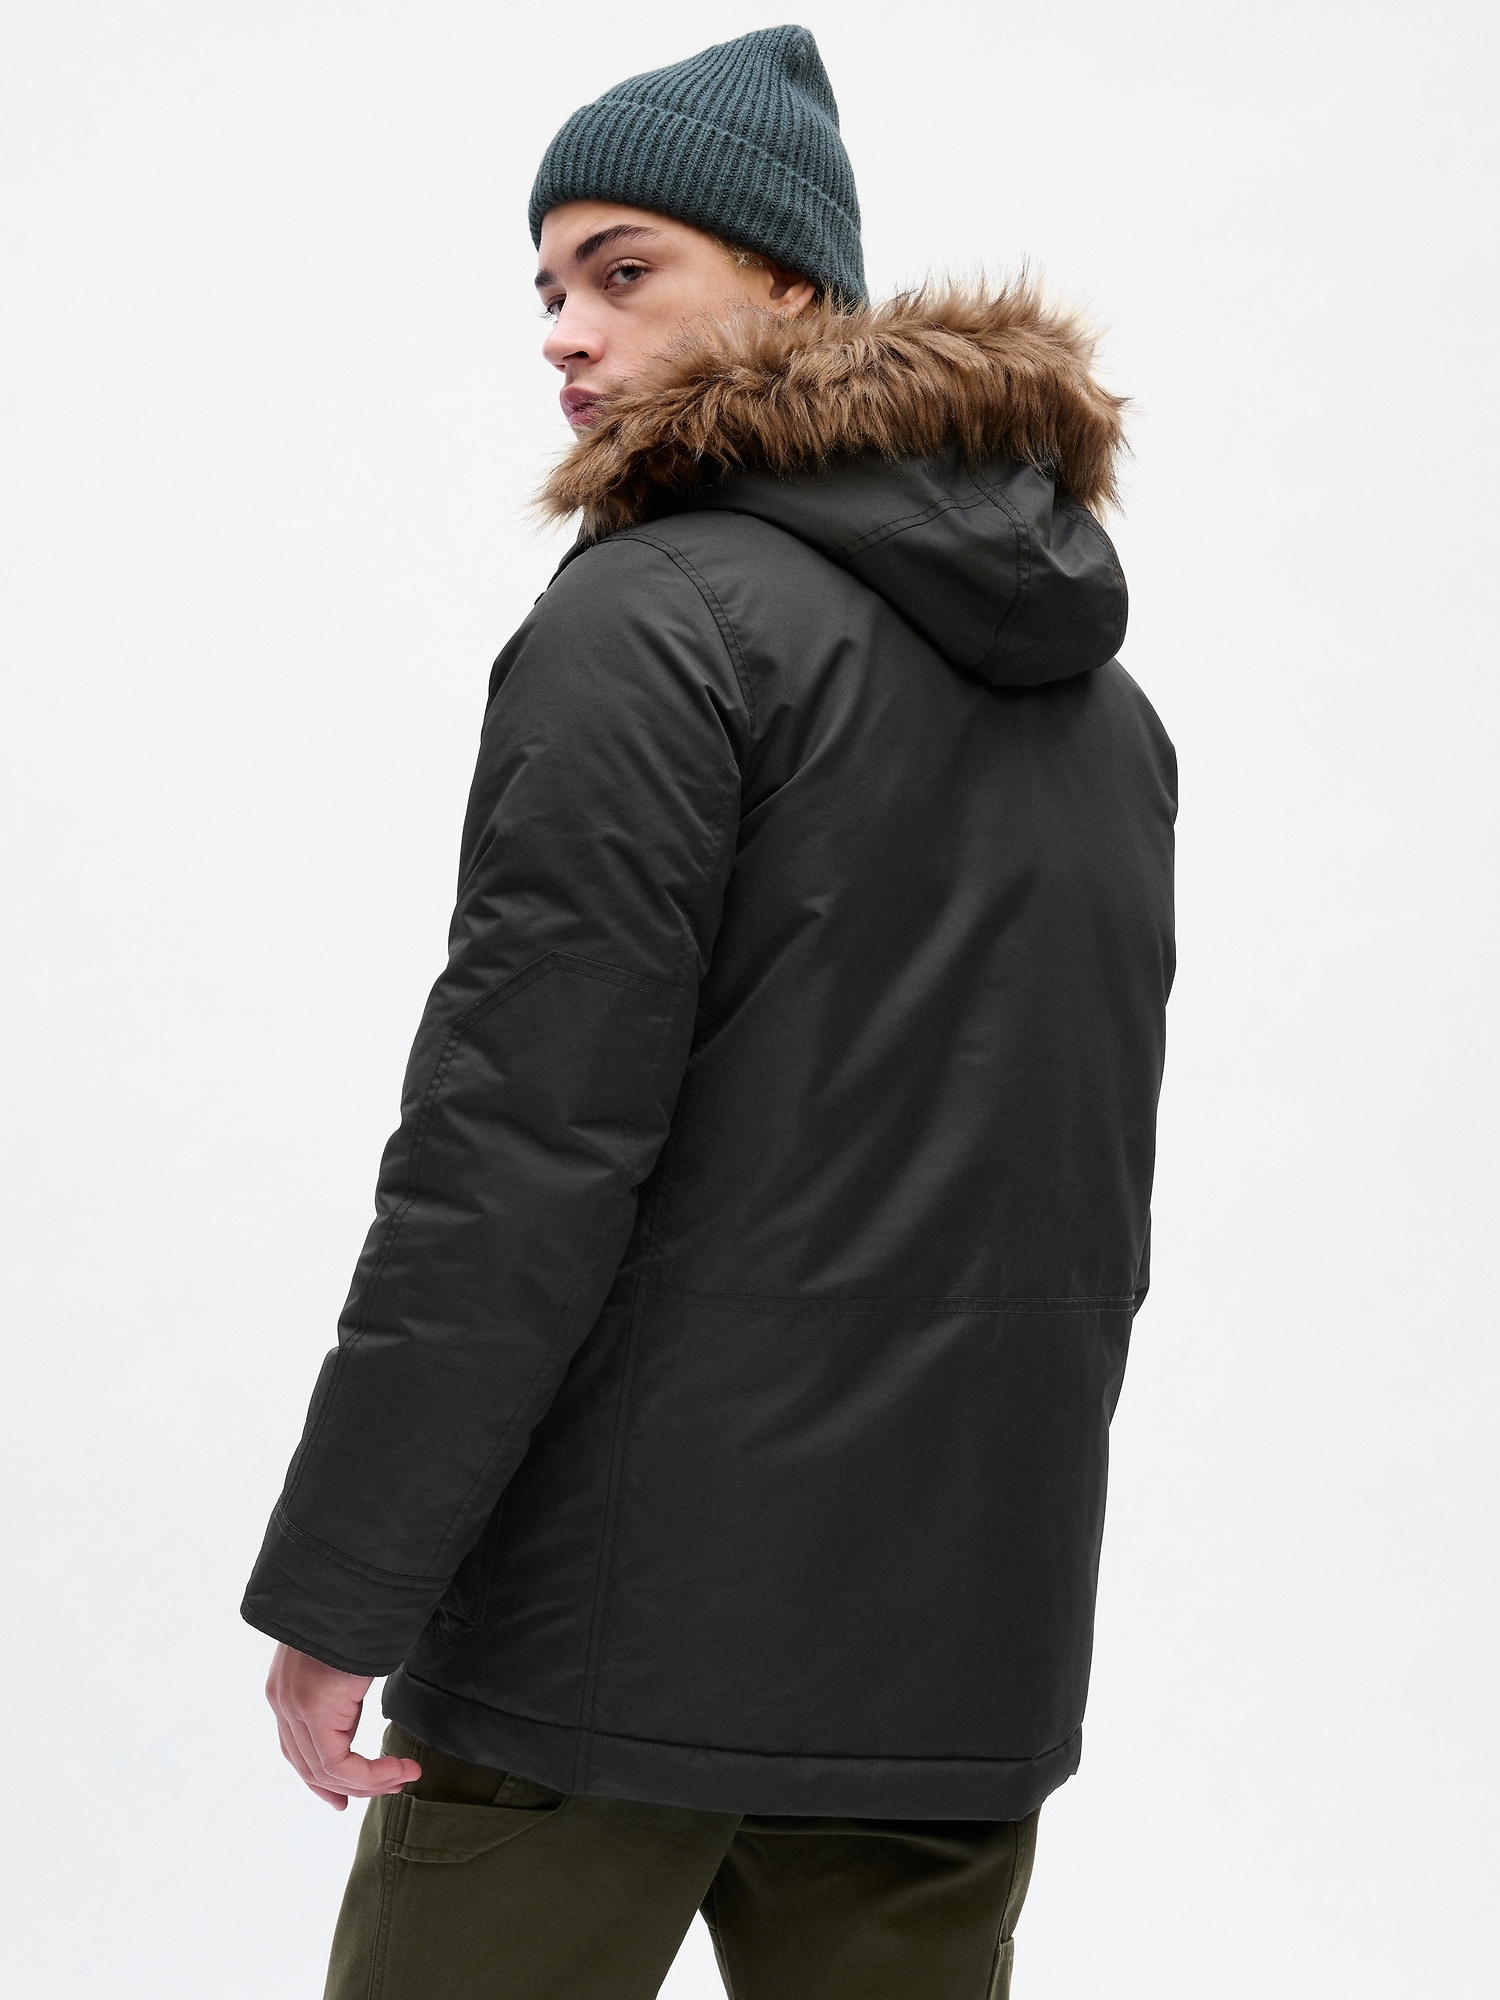 Gap Men's Snorkel coat Jacket, True Indigo SIZE XXL #870790 E111